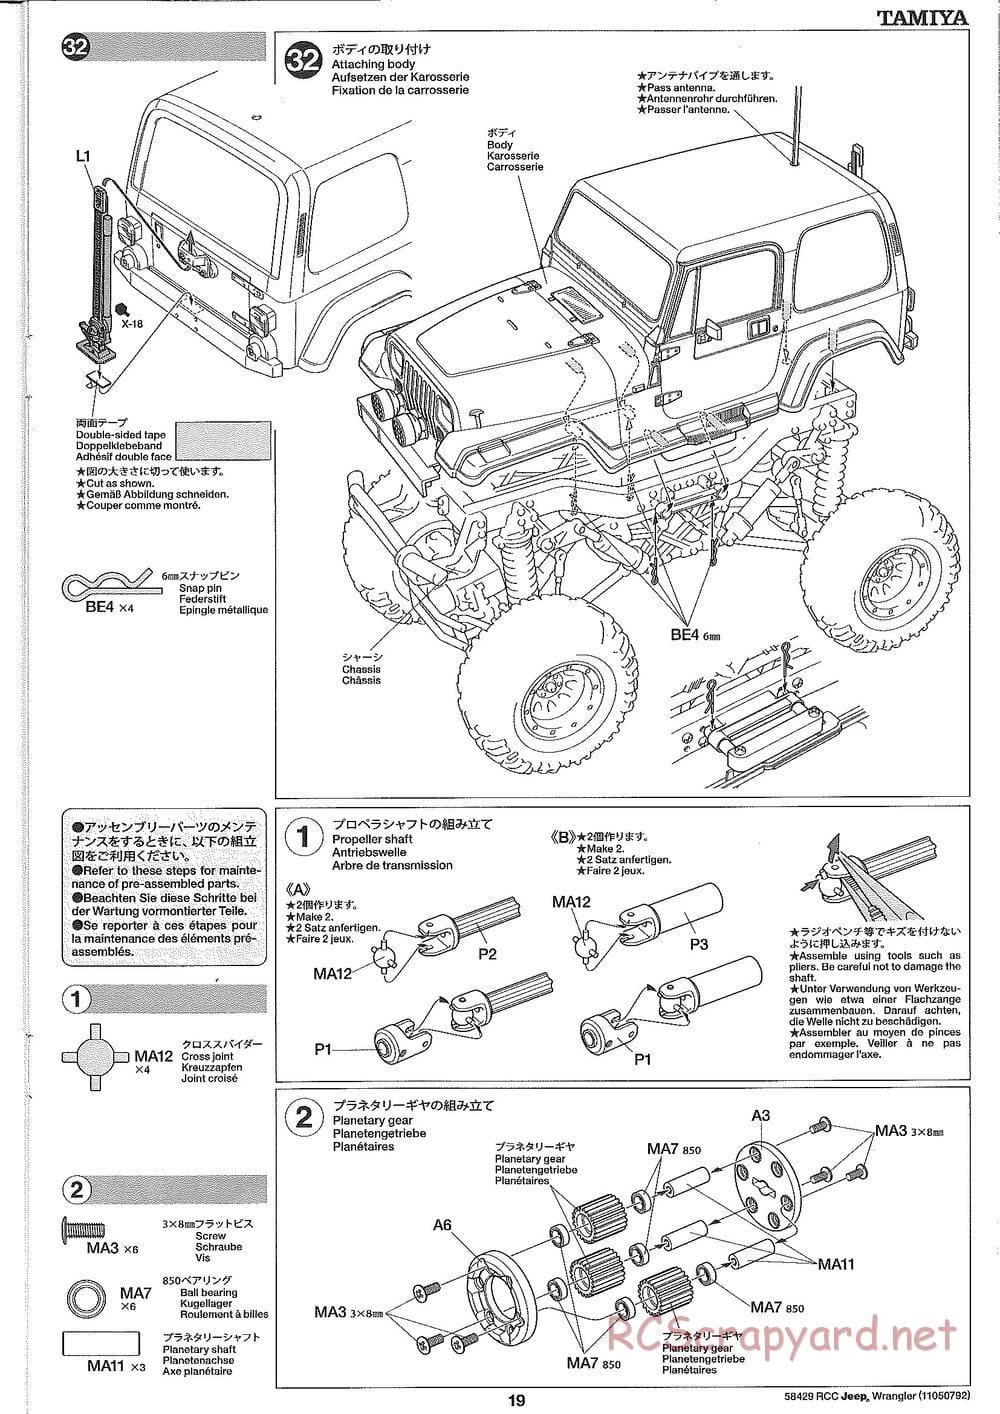 Tamiya - Jeep Wrangler - CR-01 Chassis - Manual - Page 19